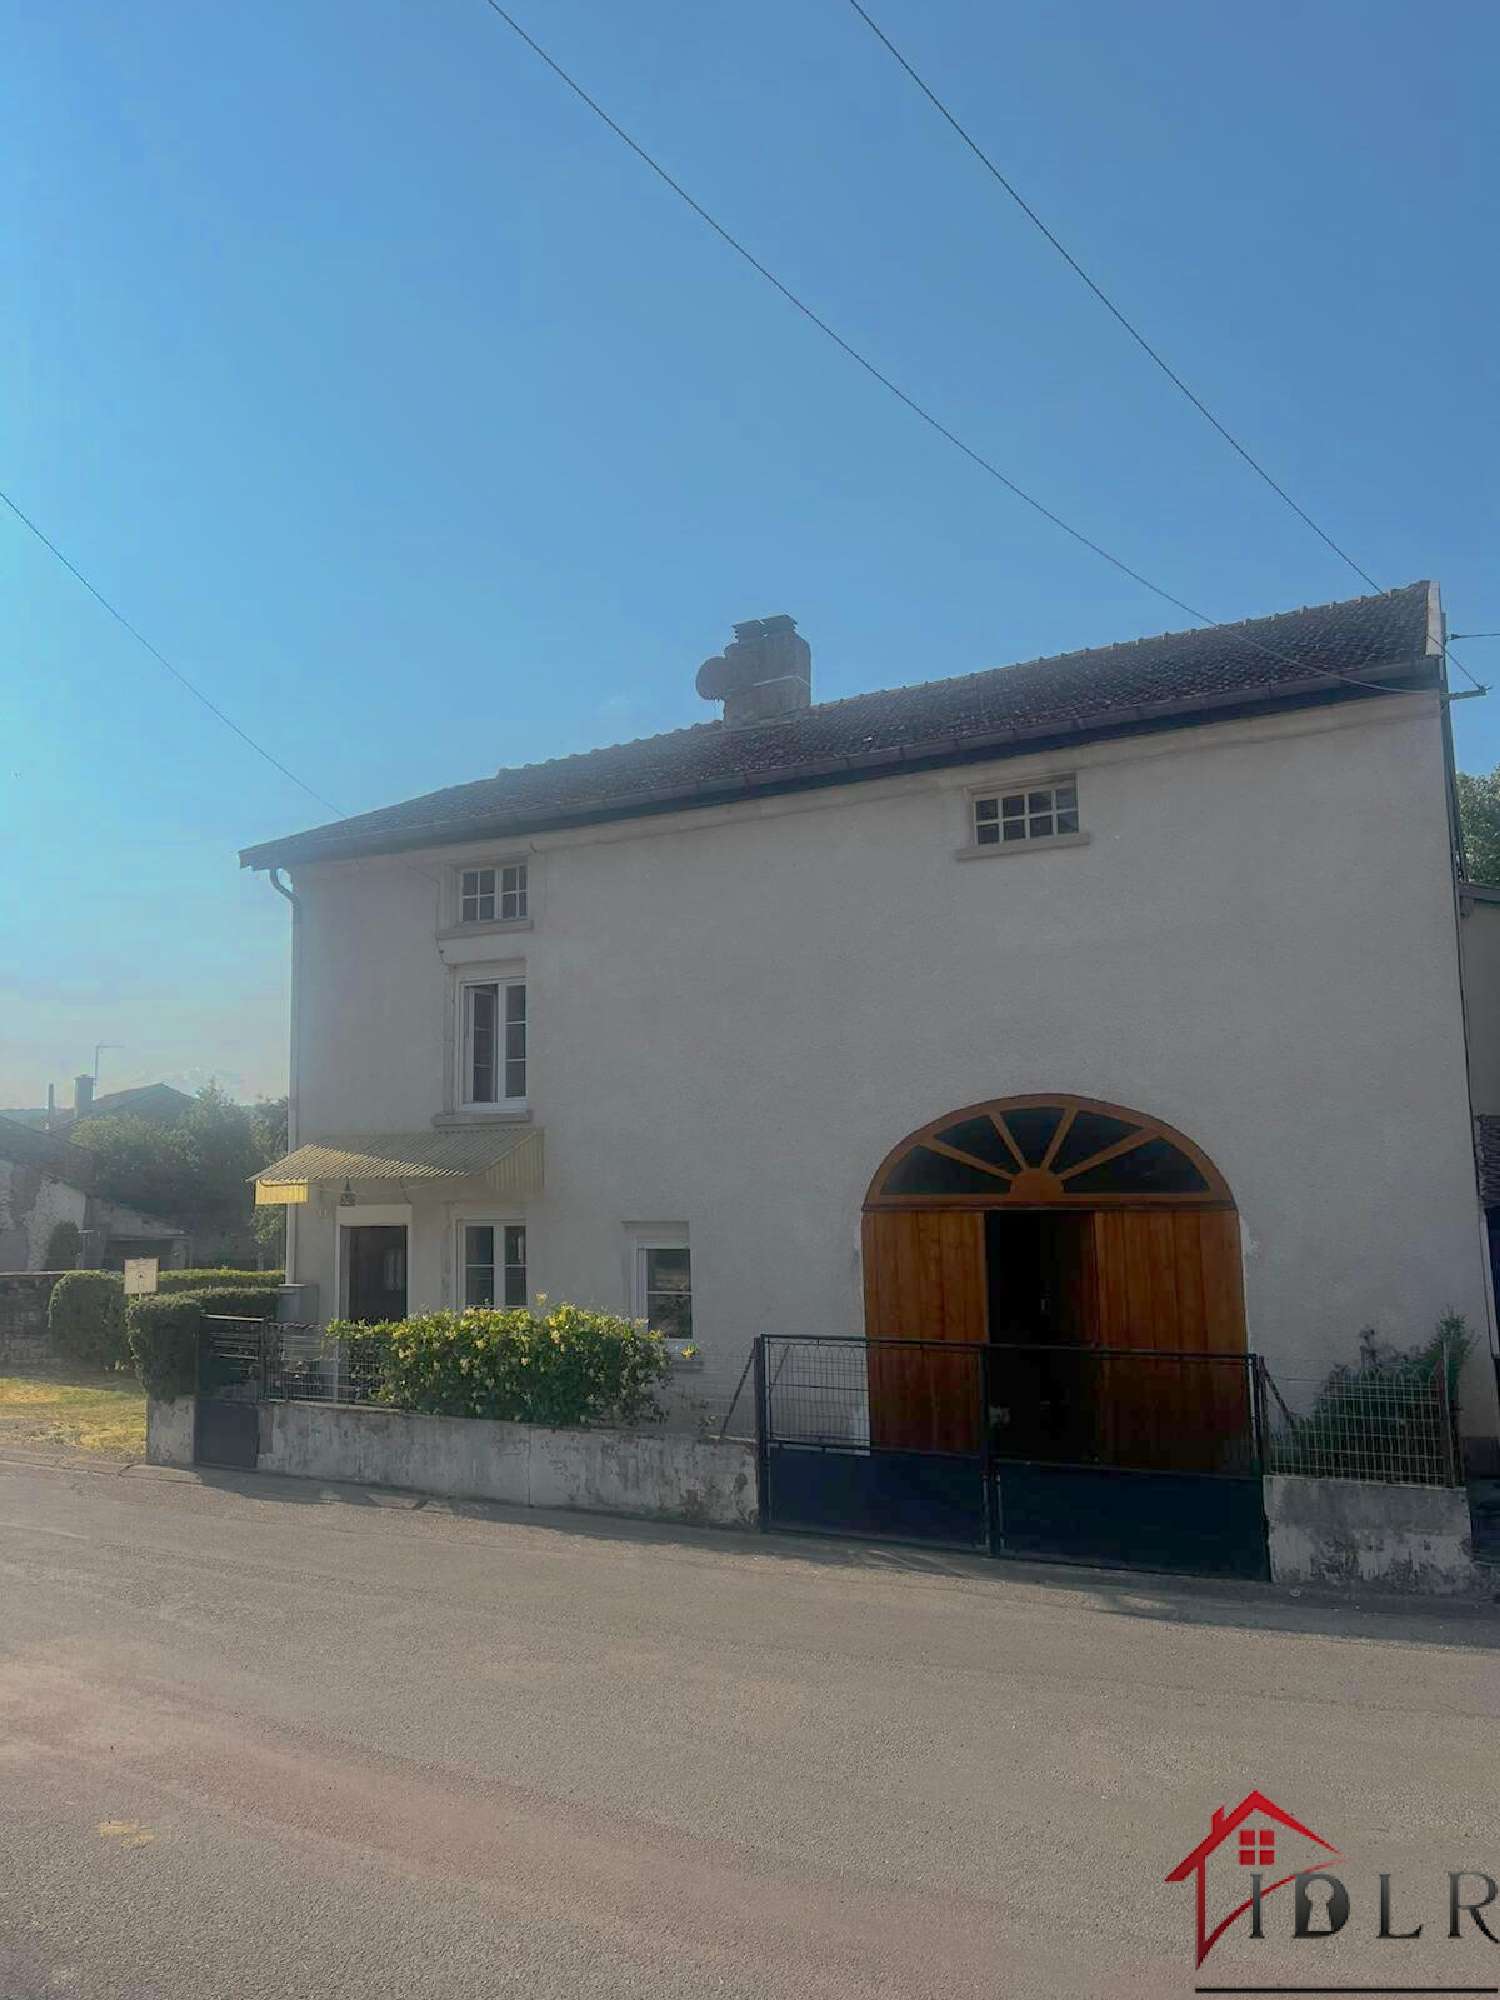  à vendre maison de village Neuvelle-lès-Voisey Haute-Marne 1